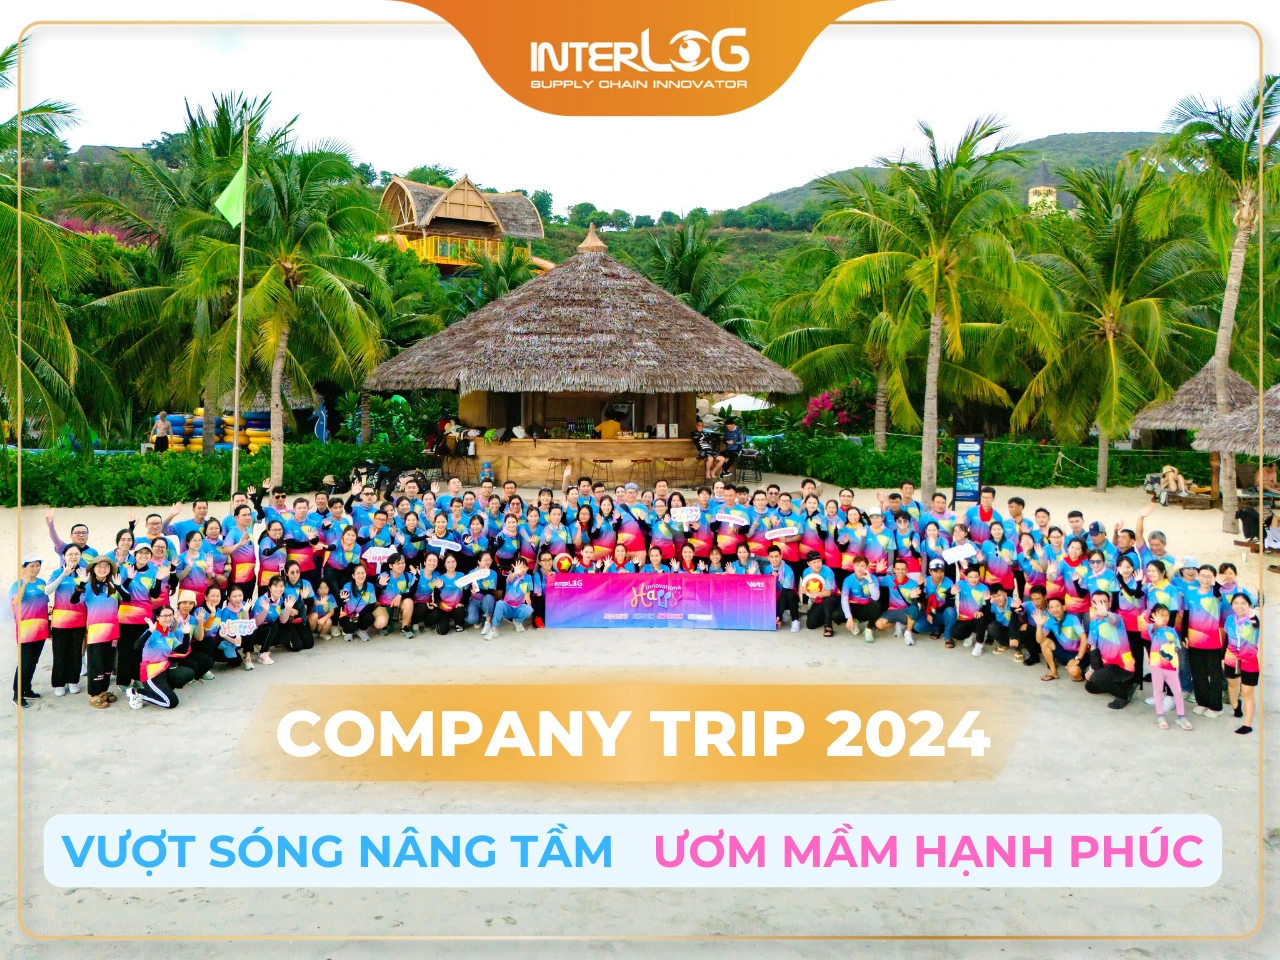 [Company Trip] Happy Company Trip 2024: Vượt sóng nâng tầm, ươm mầm hạnh phúc